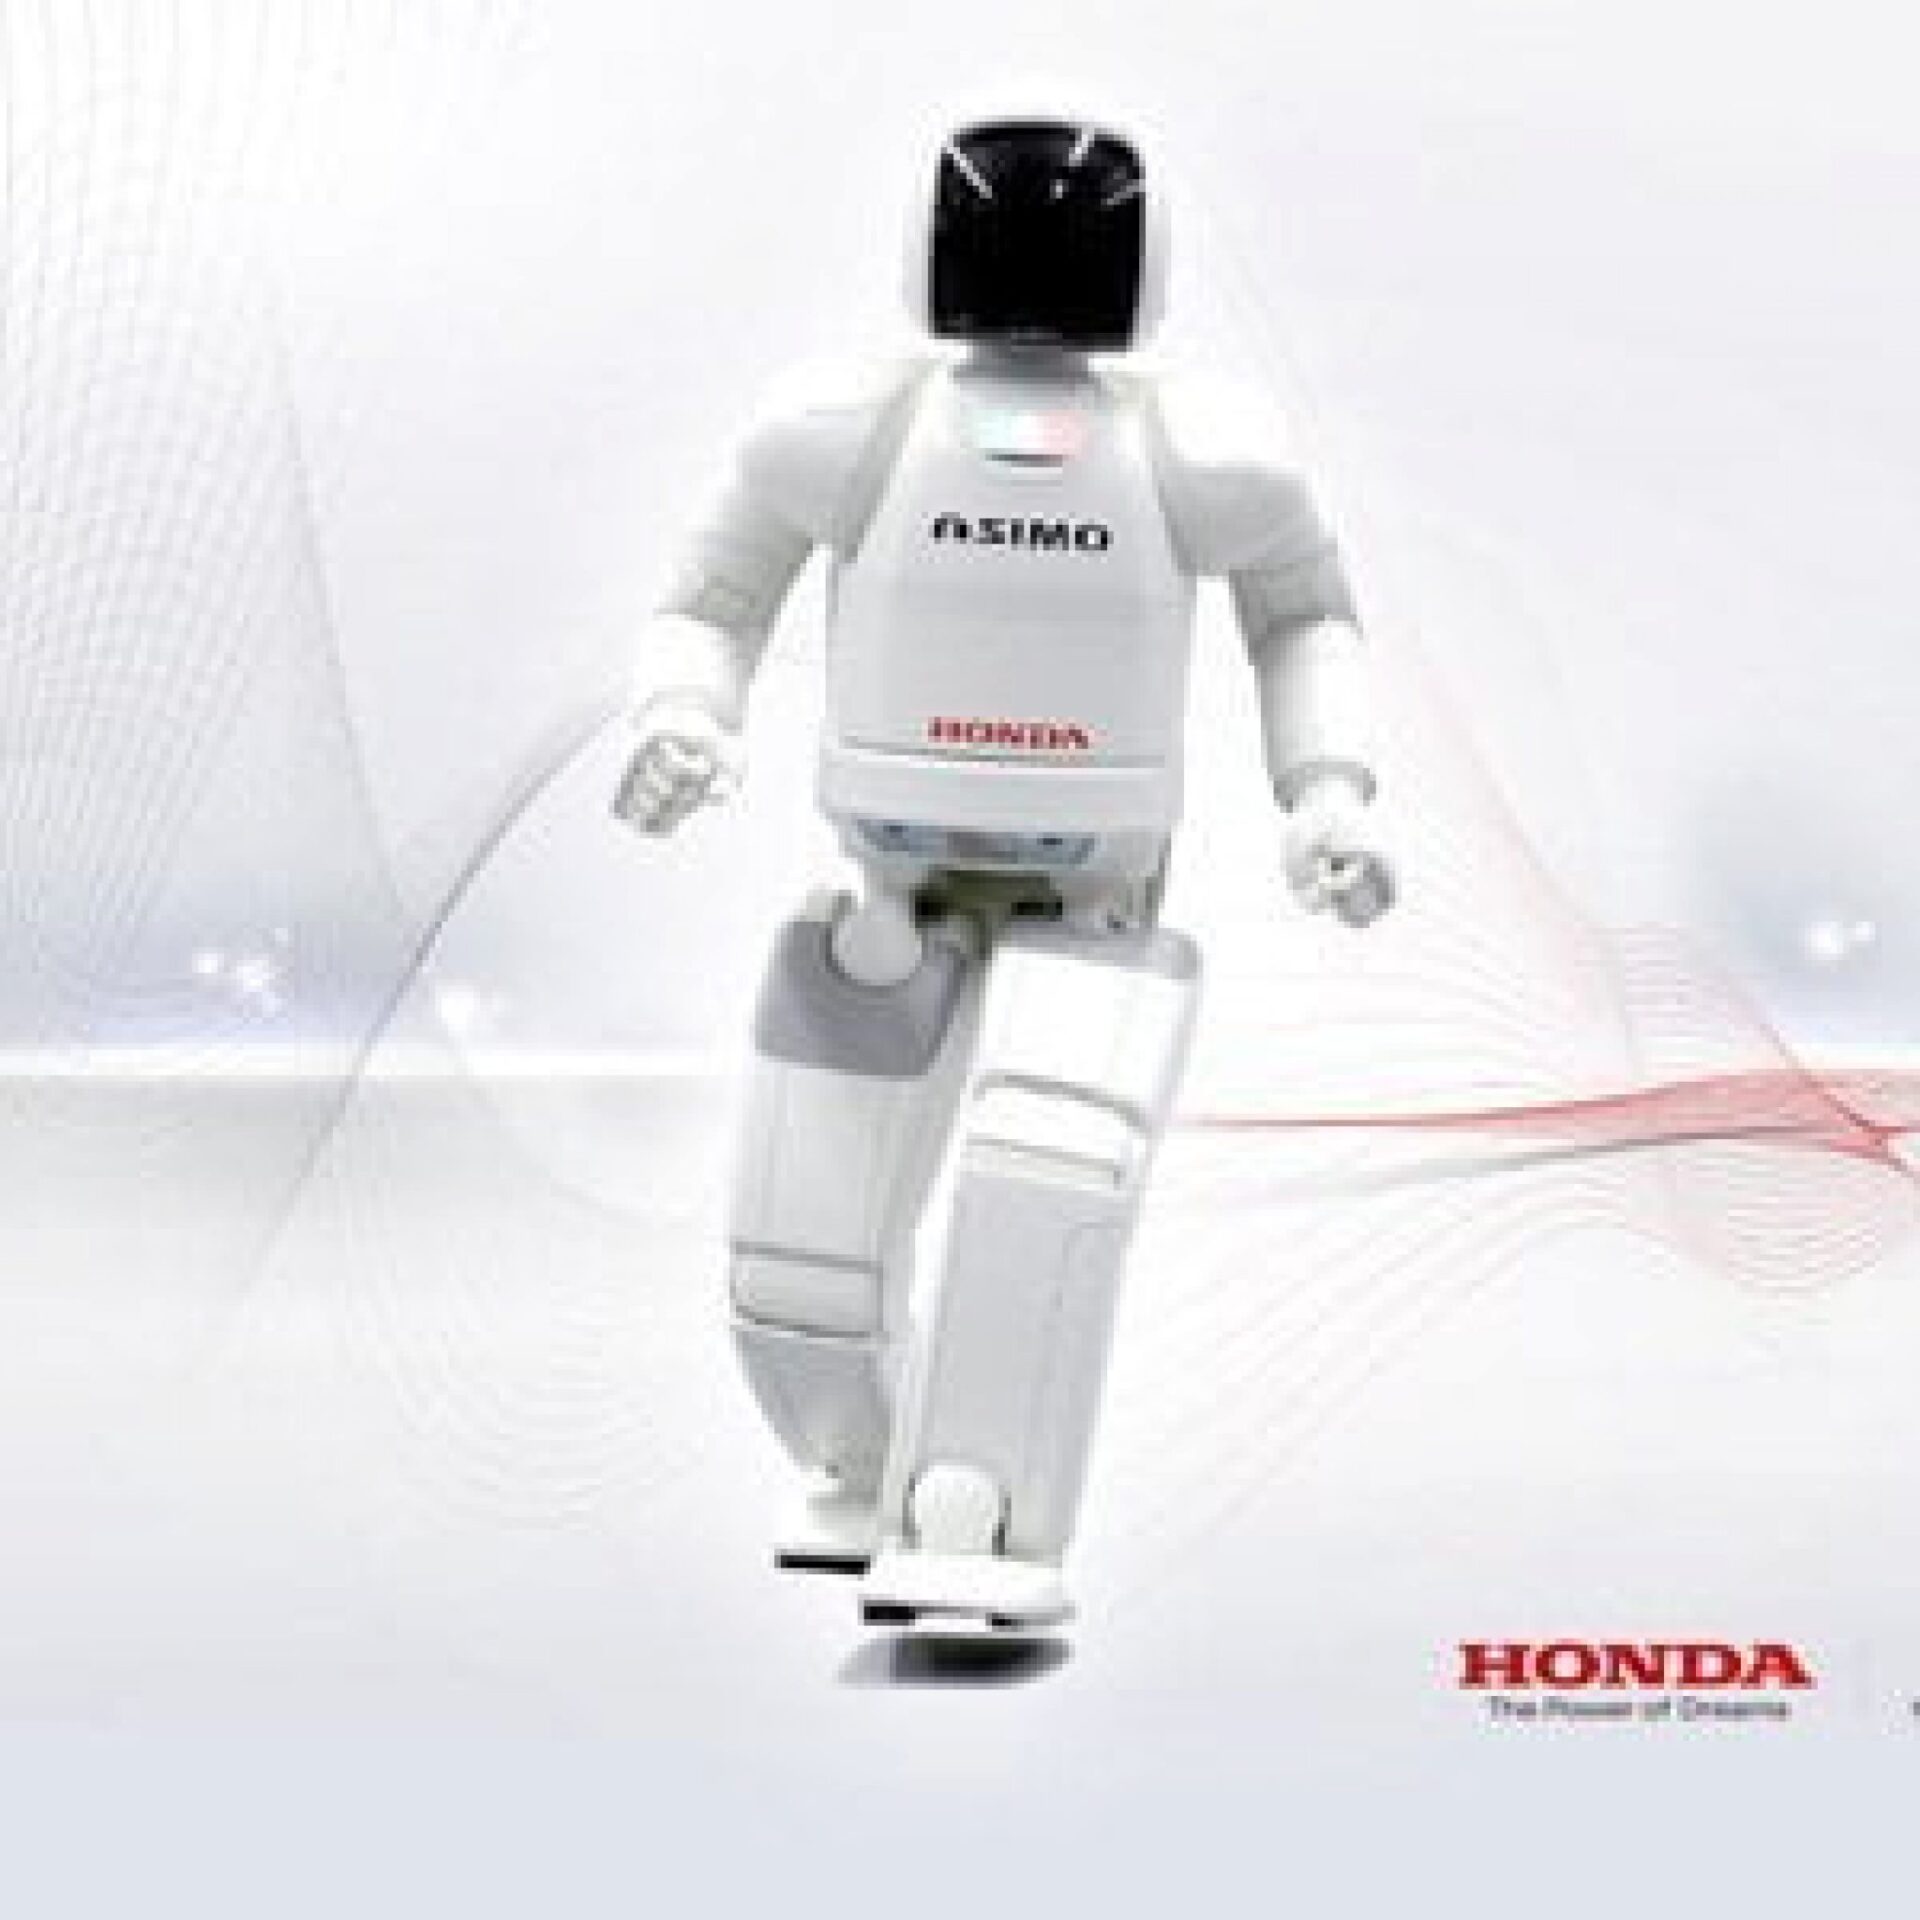 Honda Asimo Robot Humanoide: Su Historia